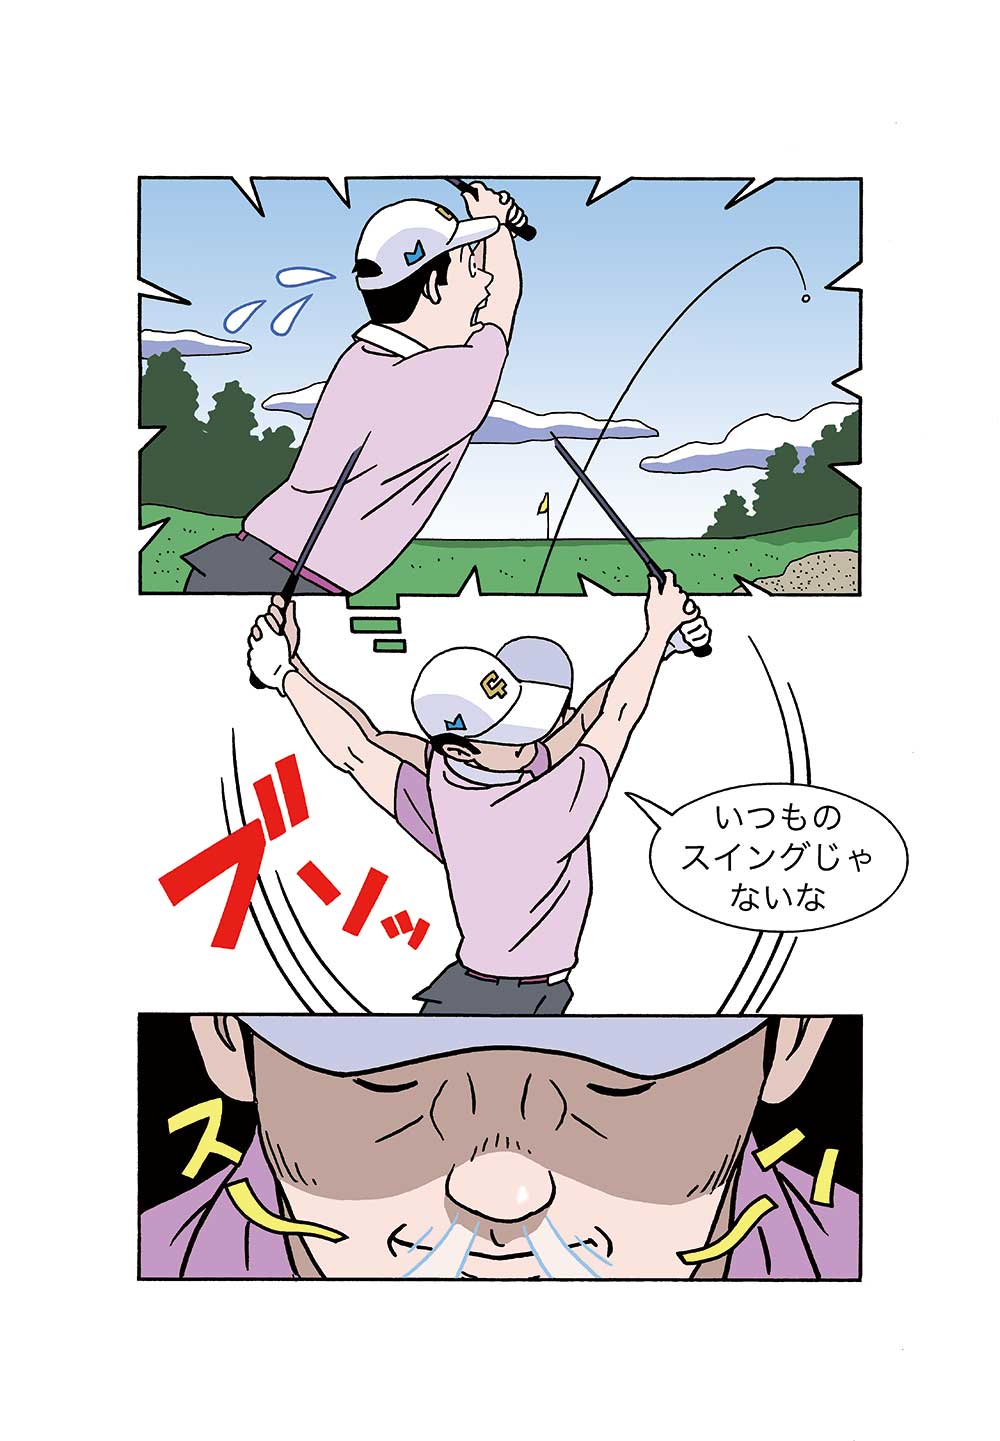 【ゴルフ上達のメンタル法】vol.16「ミスしても、次打でナイス